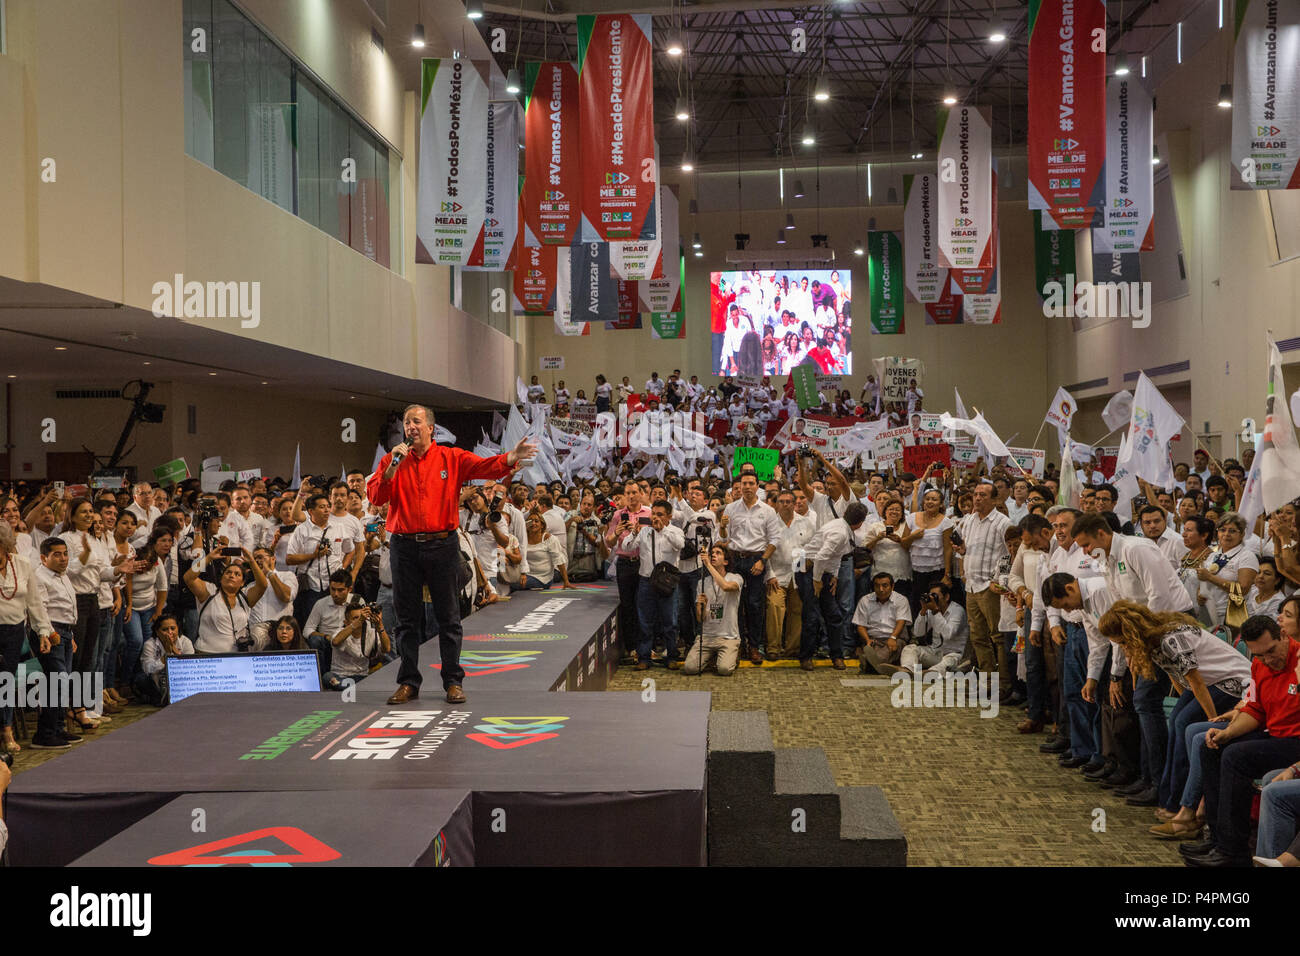 Un événement de campagne pour JosŽ Antonio Meade leader du Parti révolutionnaire institutionnel (PRI) et candidat à l'élection présidentielle, le 27 mai 2018, Campeche, Mexique. Banque D'Images